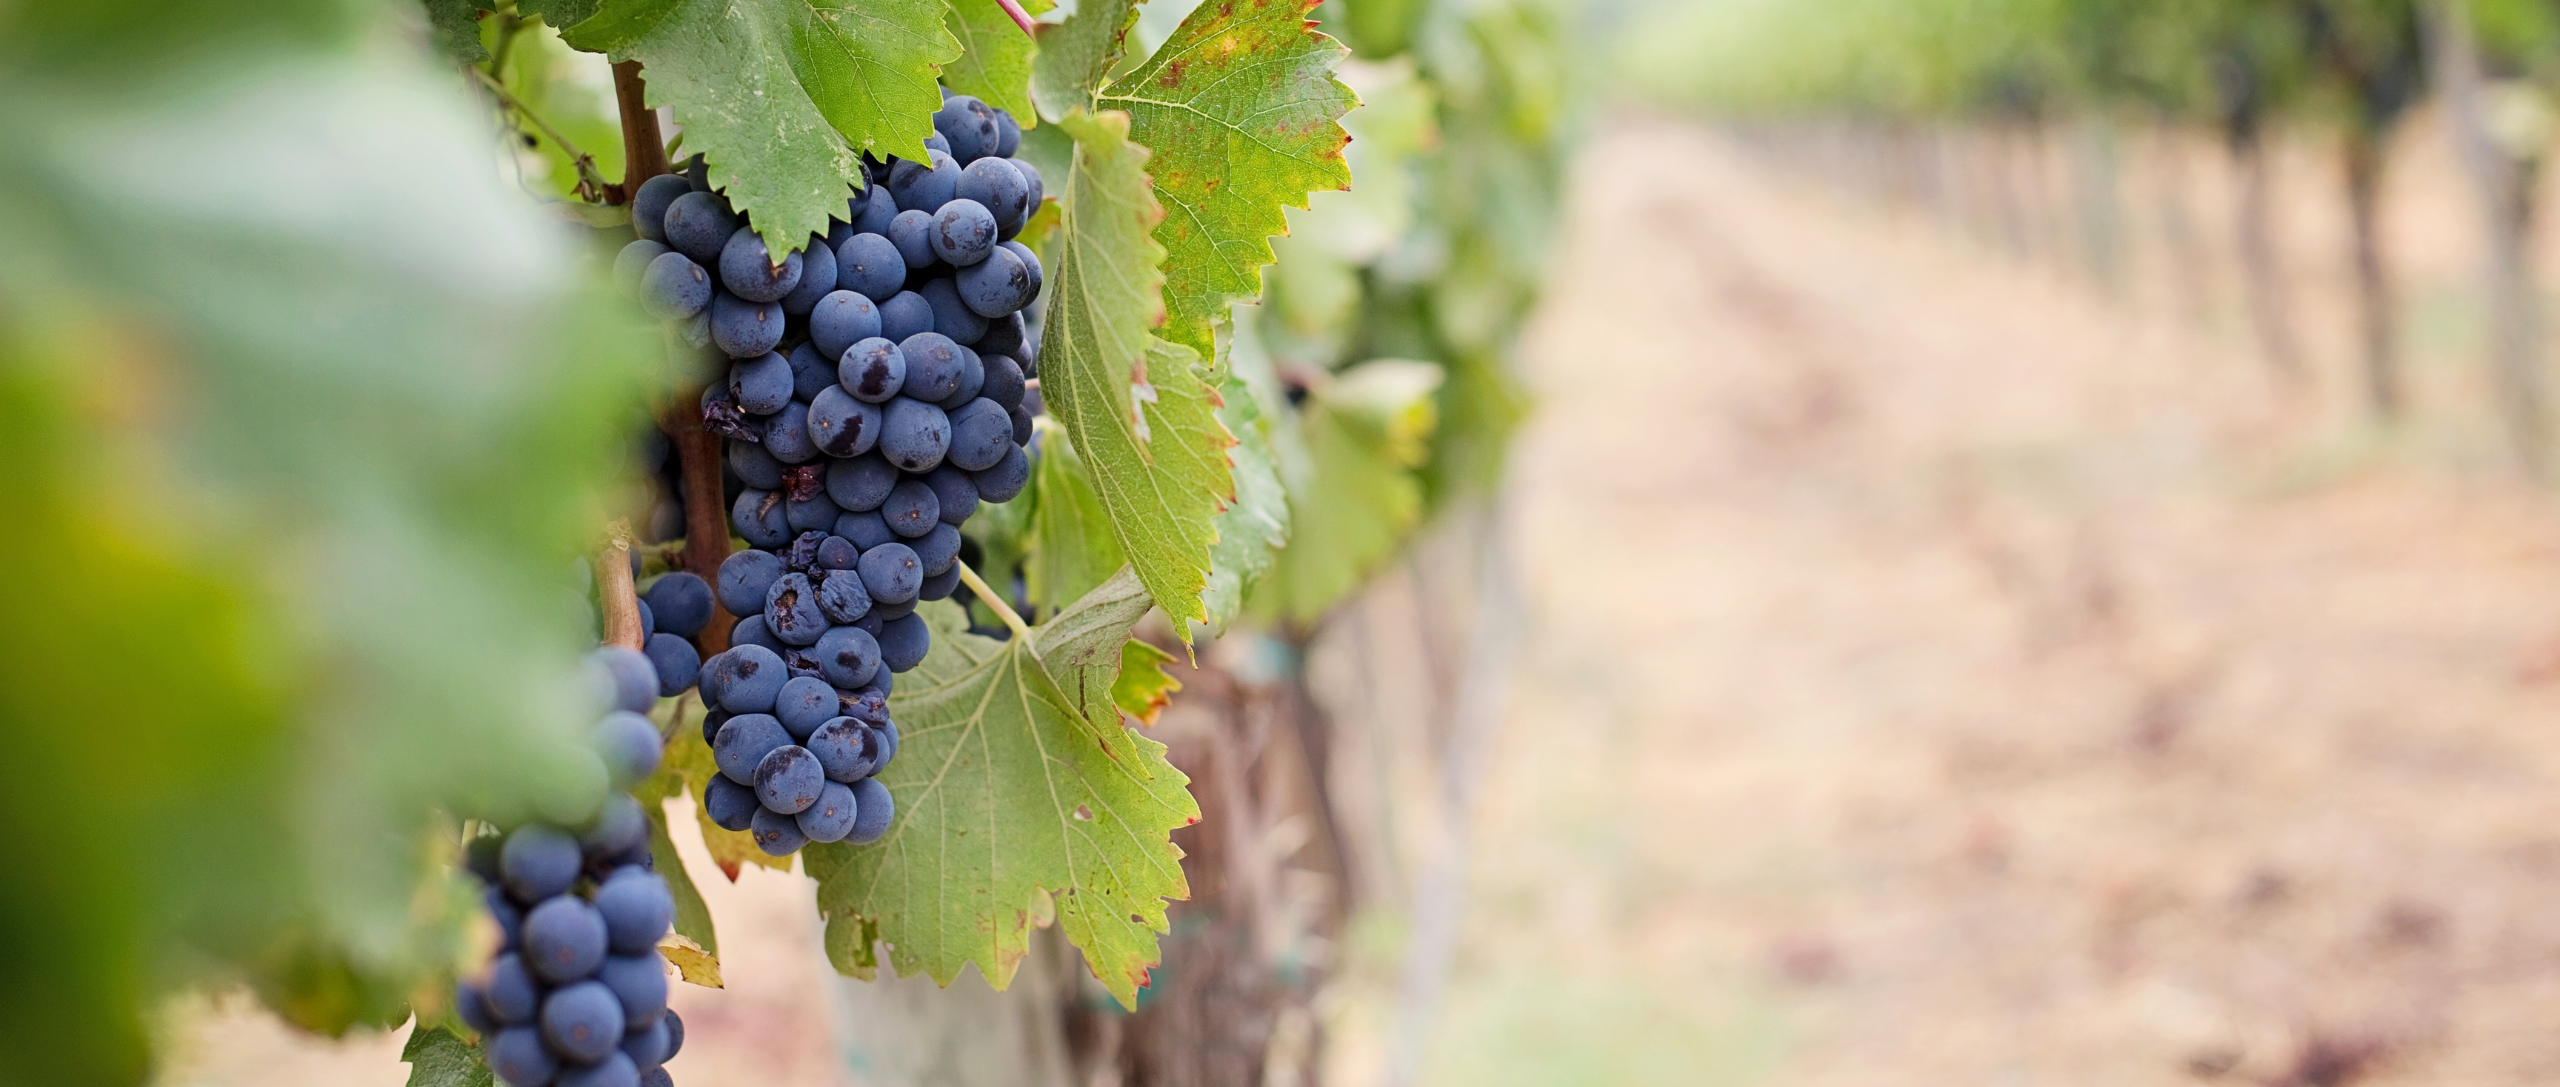 Detalle de unos viñedos españoles con racimos de uva a punto de recoger